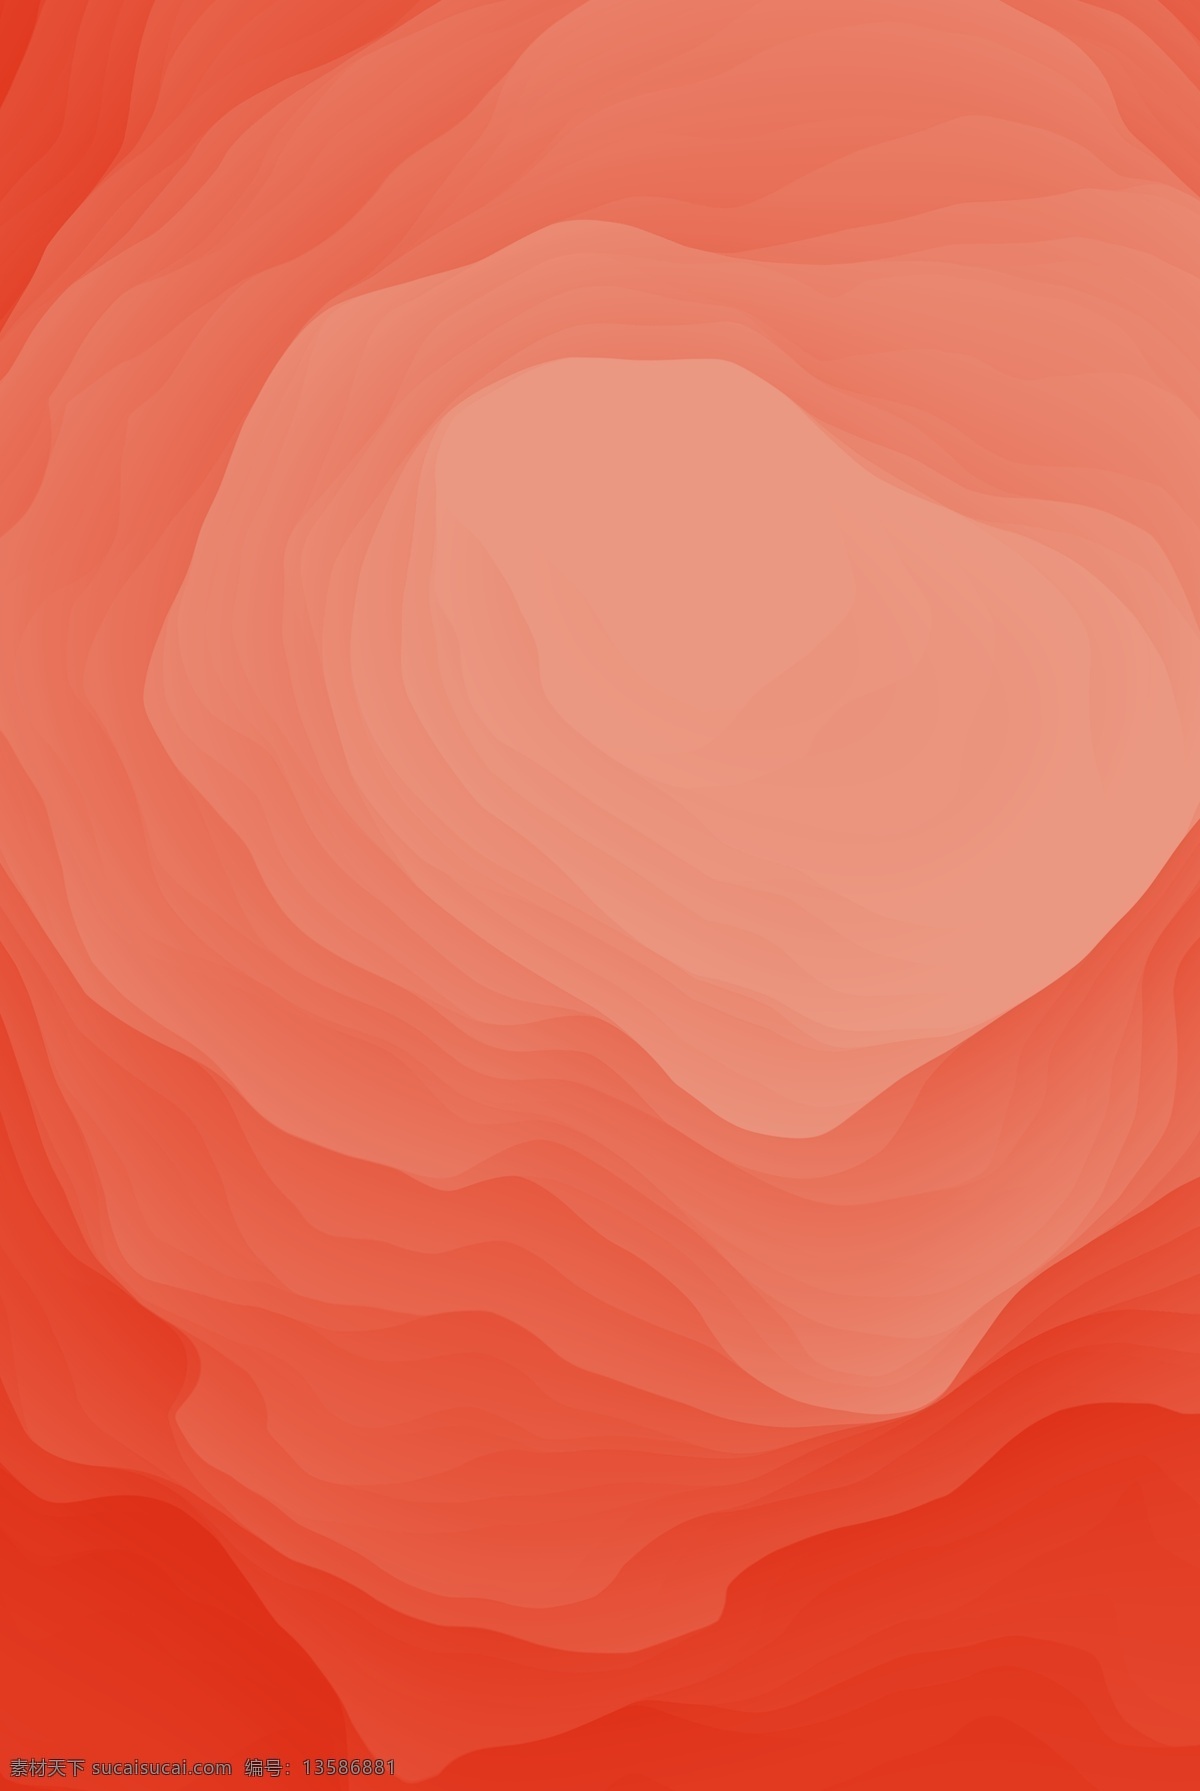 抽象 玫瑰 纹理 大气 时尚 珊瑚 橙 渐变 背景 玫瑰纹理 伪3d 小清新 海报 珊瑚橙渐变 底纹 立体